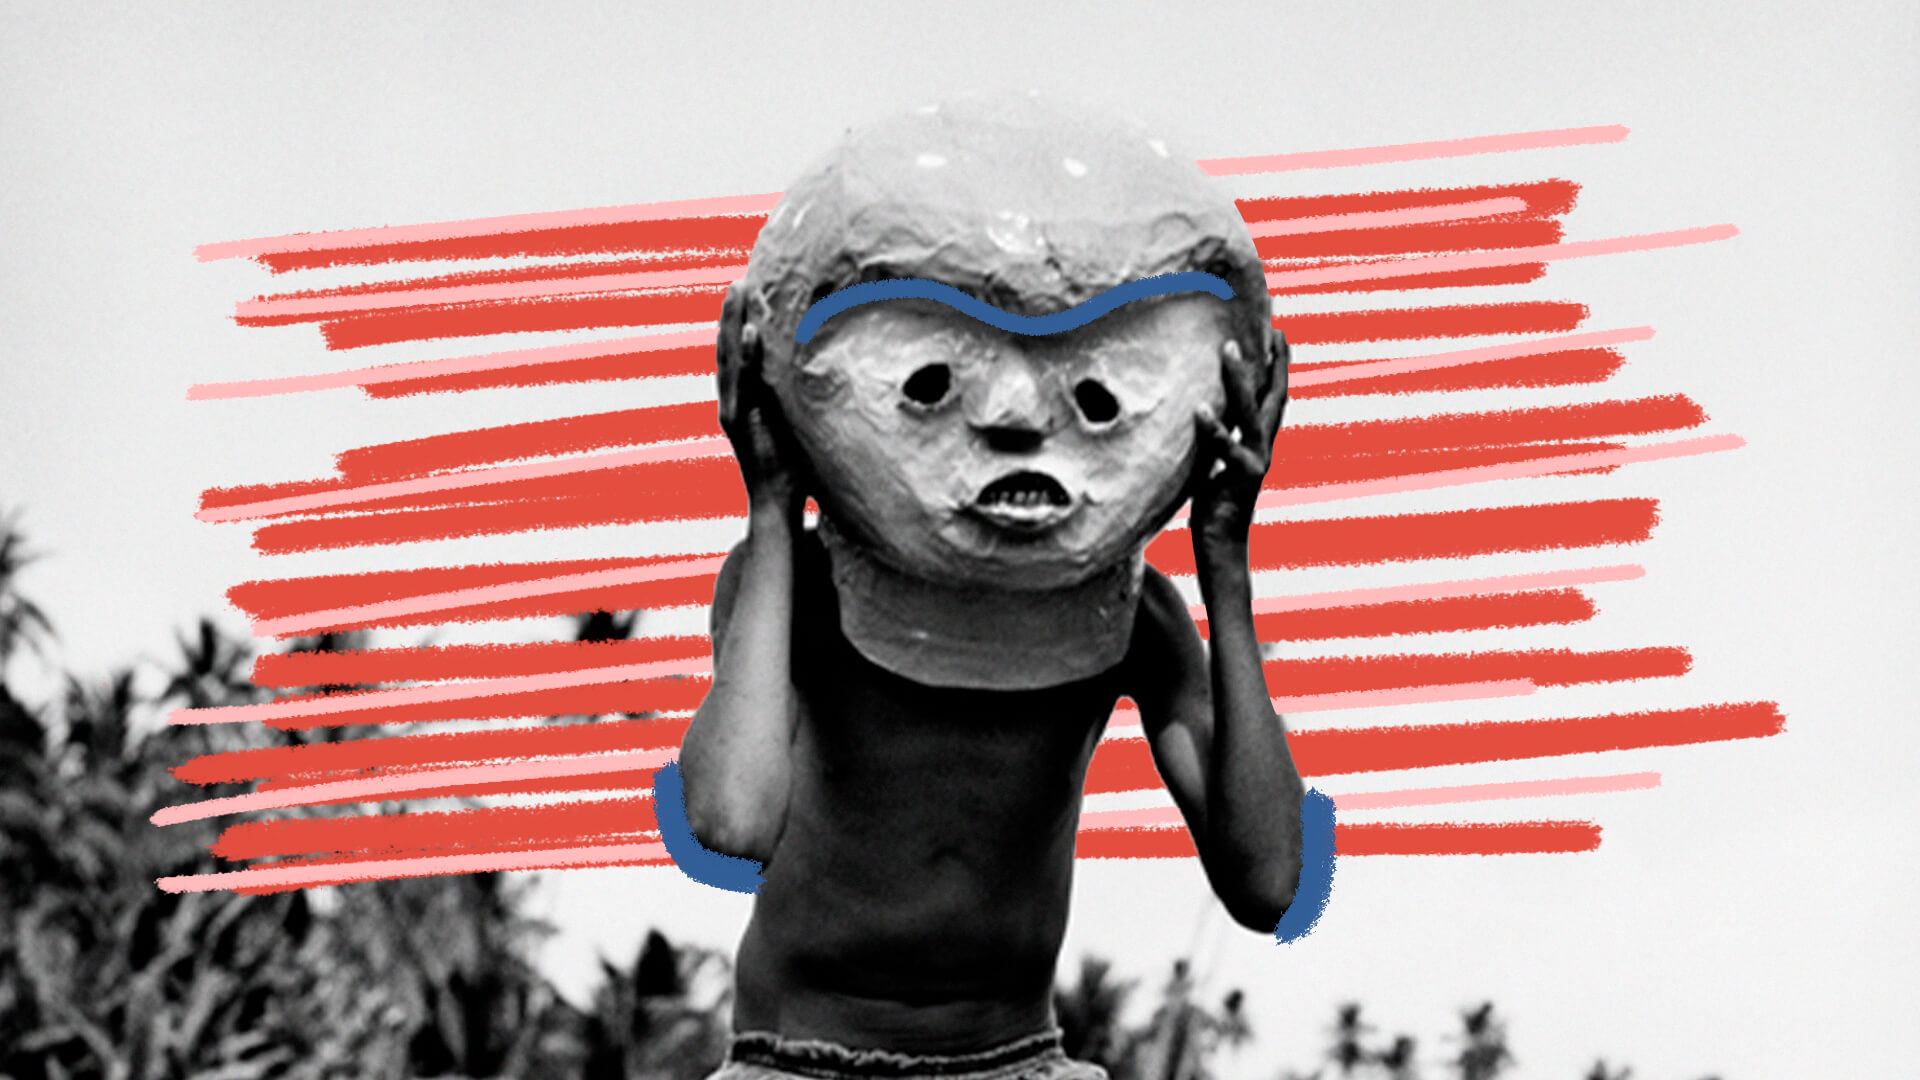 Foto em preto e branco de uma pessoa com uma máscara típica do Carnaval de Alagoas, o Bobo Gaiato. Há intervenções de arte com riscos em vermelho e alguns detalhes em azul